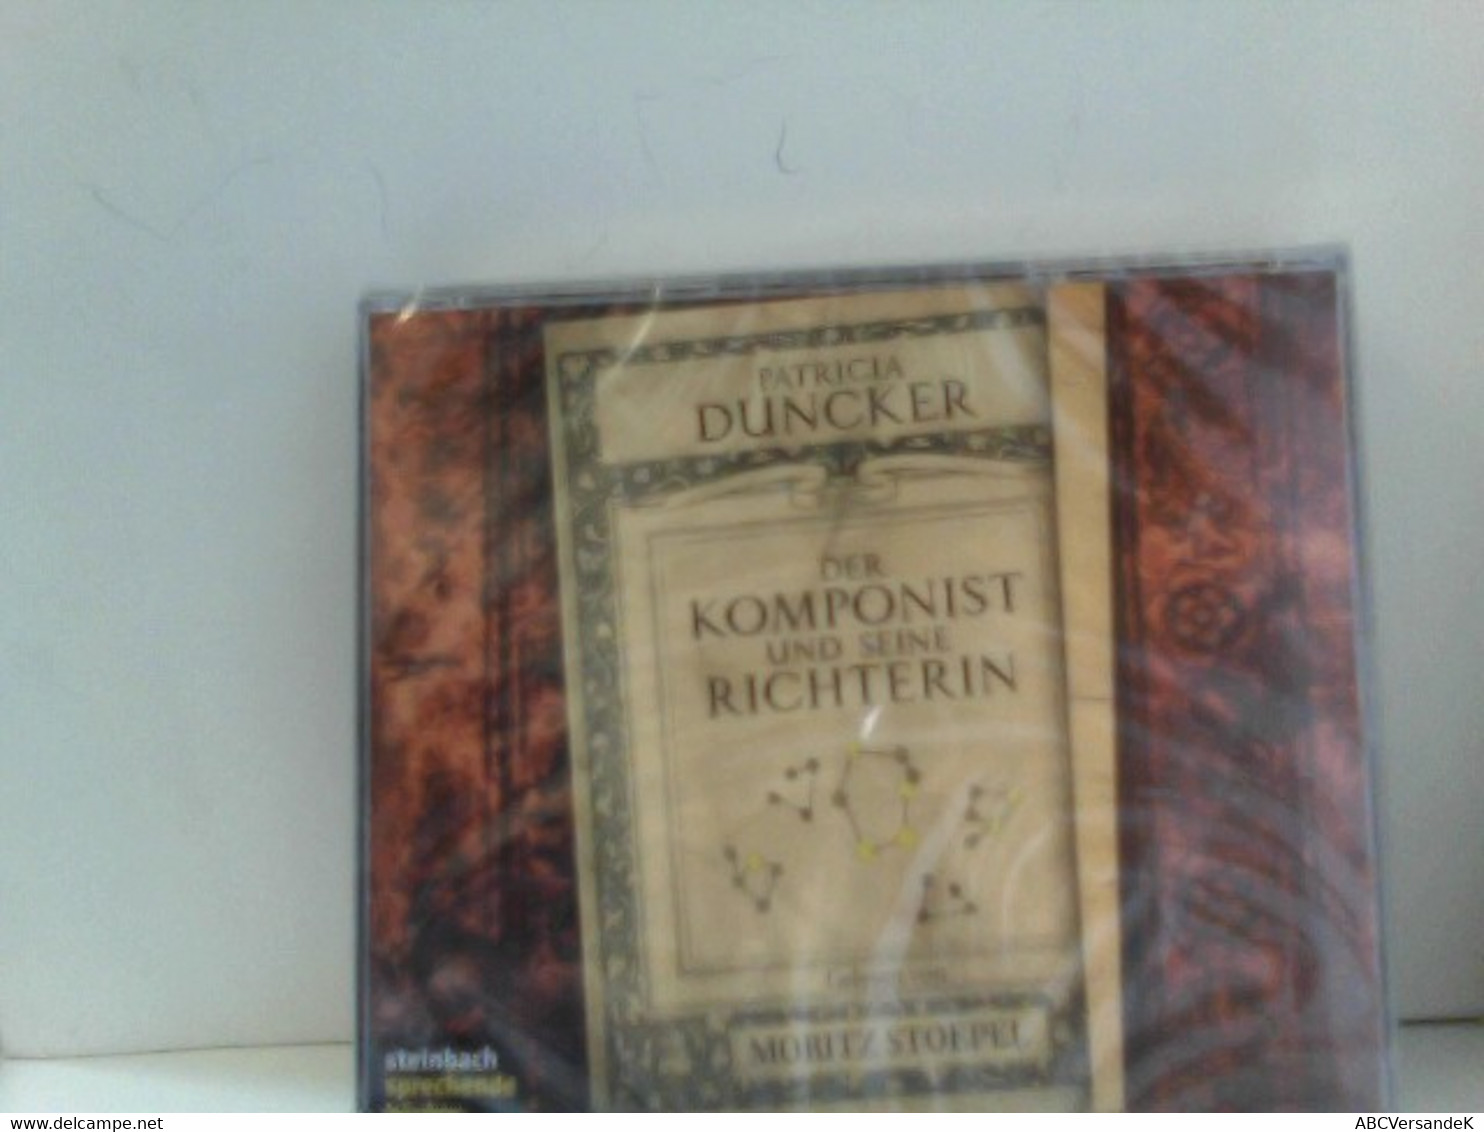 Der Komponist Und Seine Richterin. 6 CDs - CDs